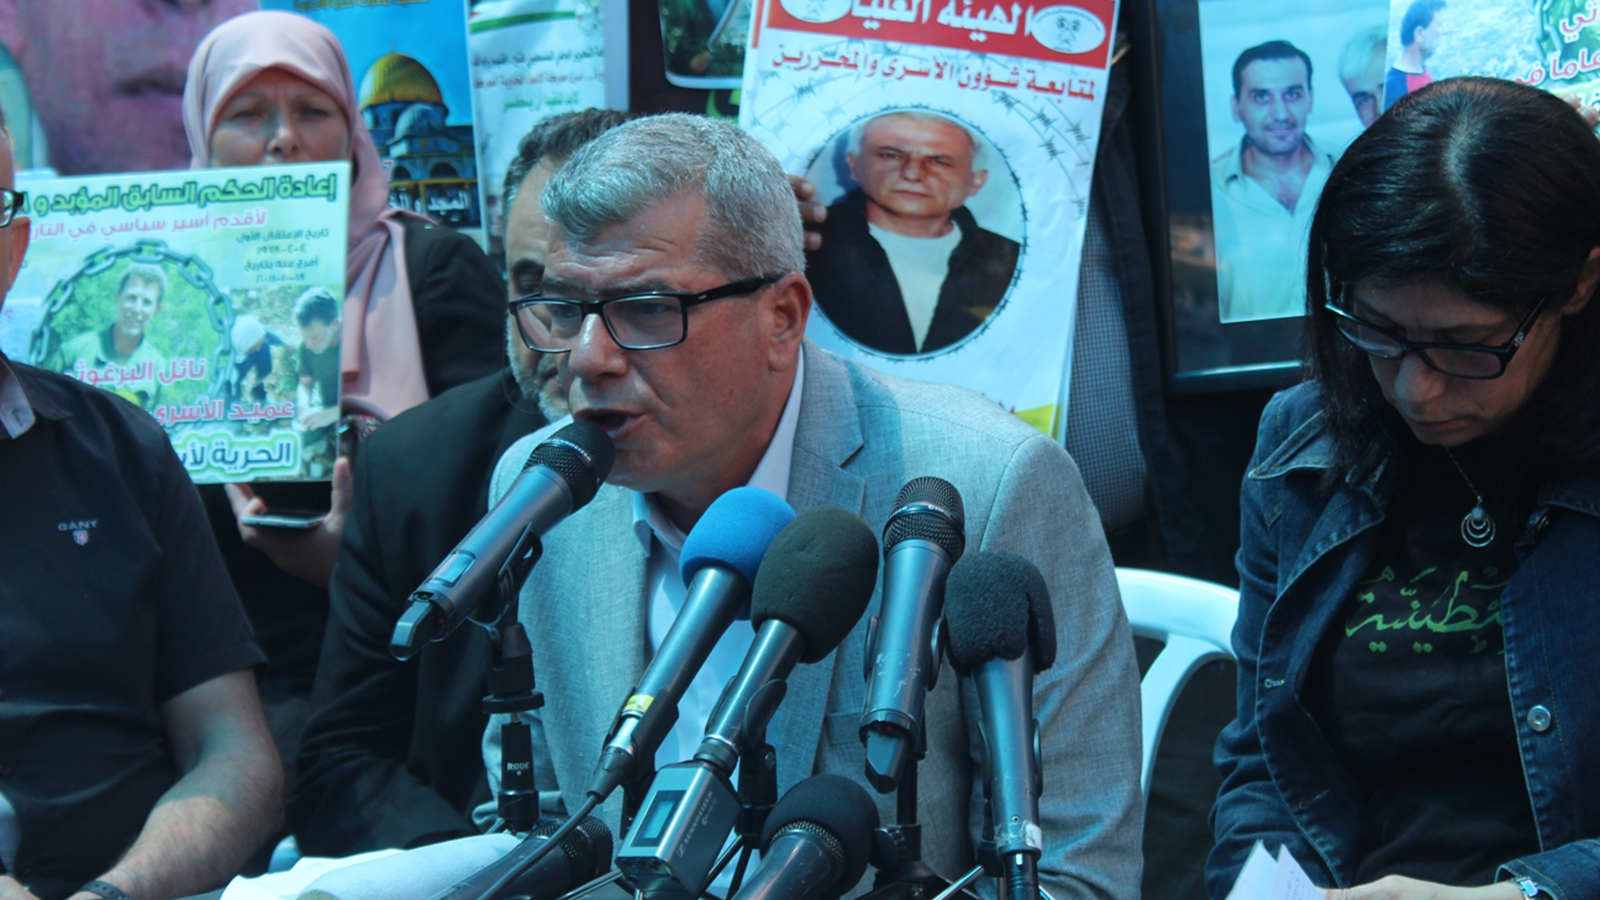 رئيس هيئة الأسرى عيسى قراقع اعتبر الإضراب إعلانا لإنهاء الانقسام الفلسطيني 